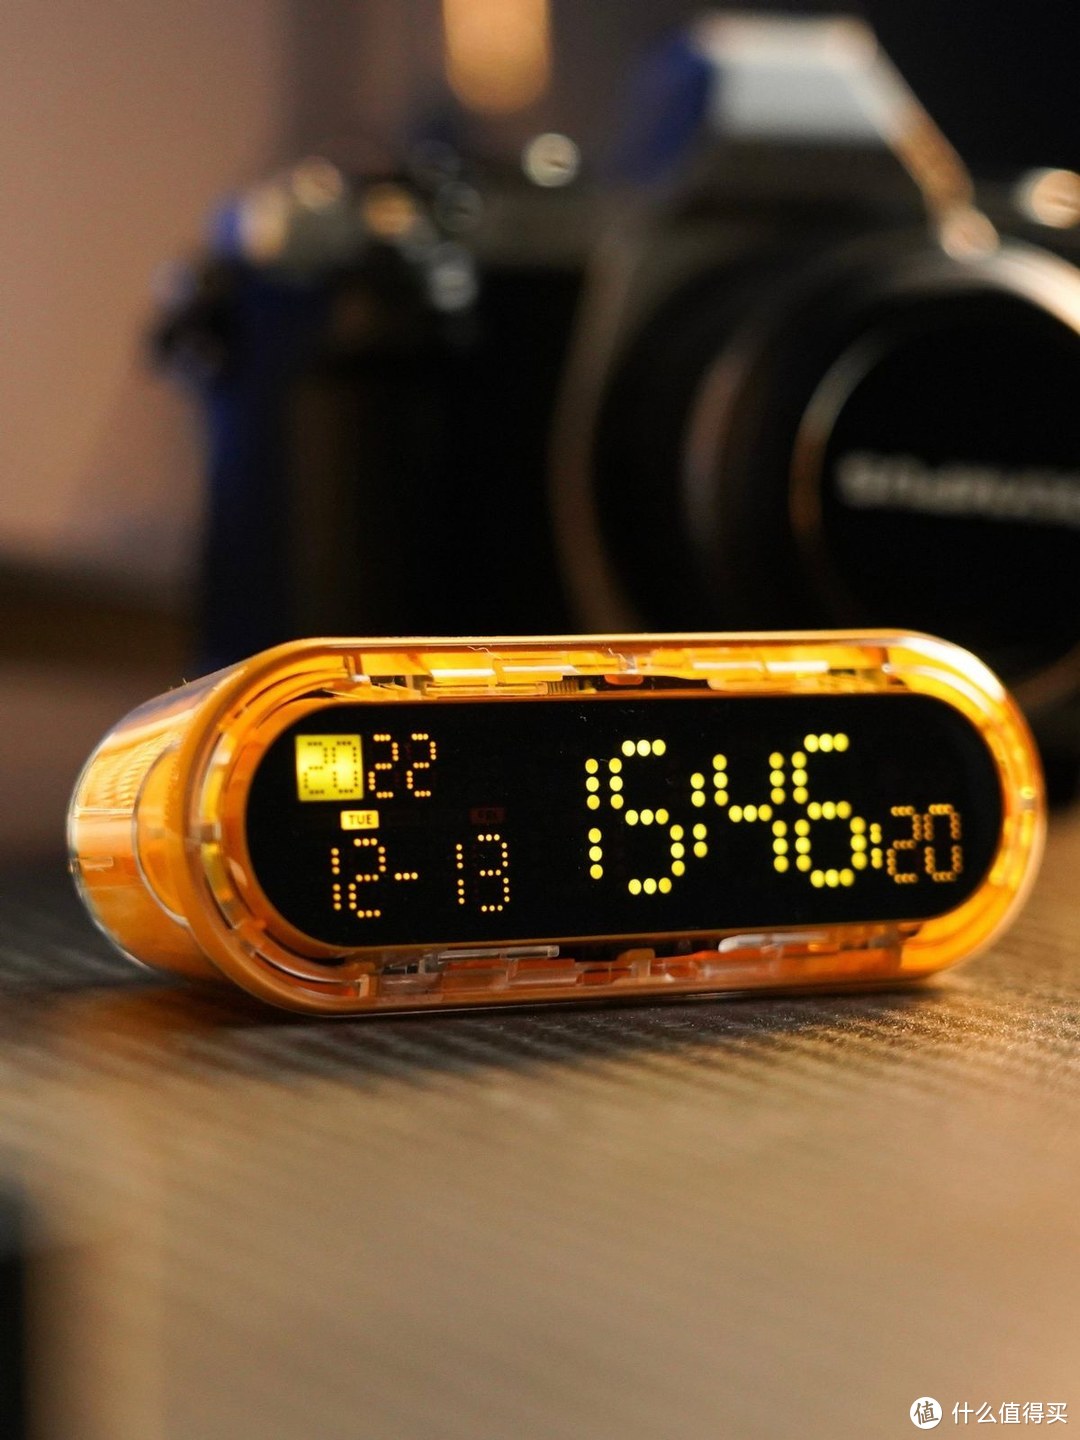 闪极——重力时间胶囊，这款重力时间胶囊又可以当做充电宝使用，又可以当做计时器来使用。